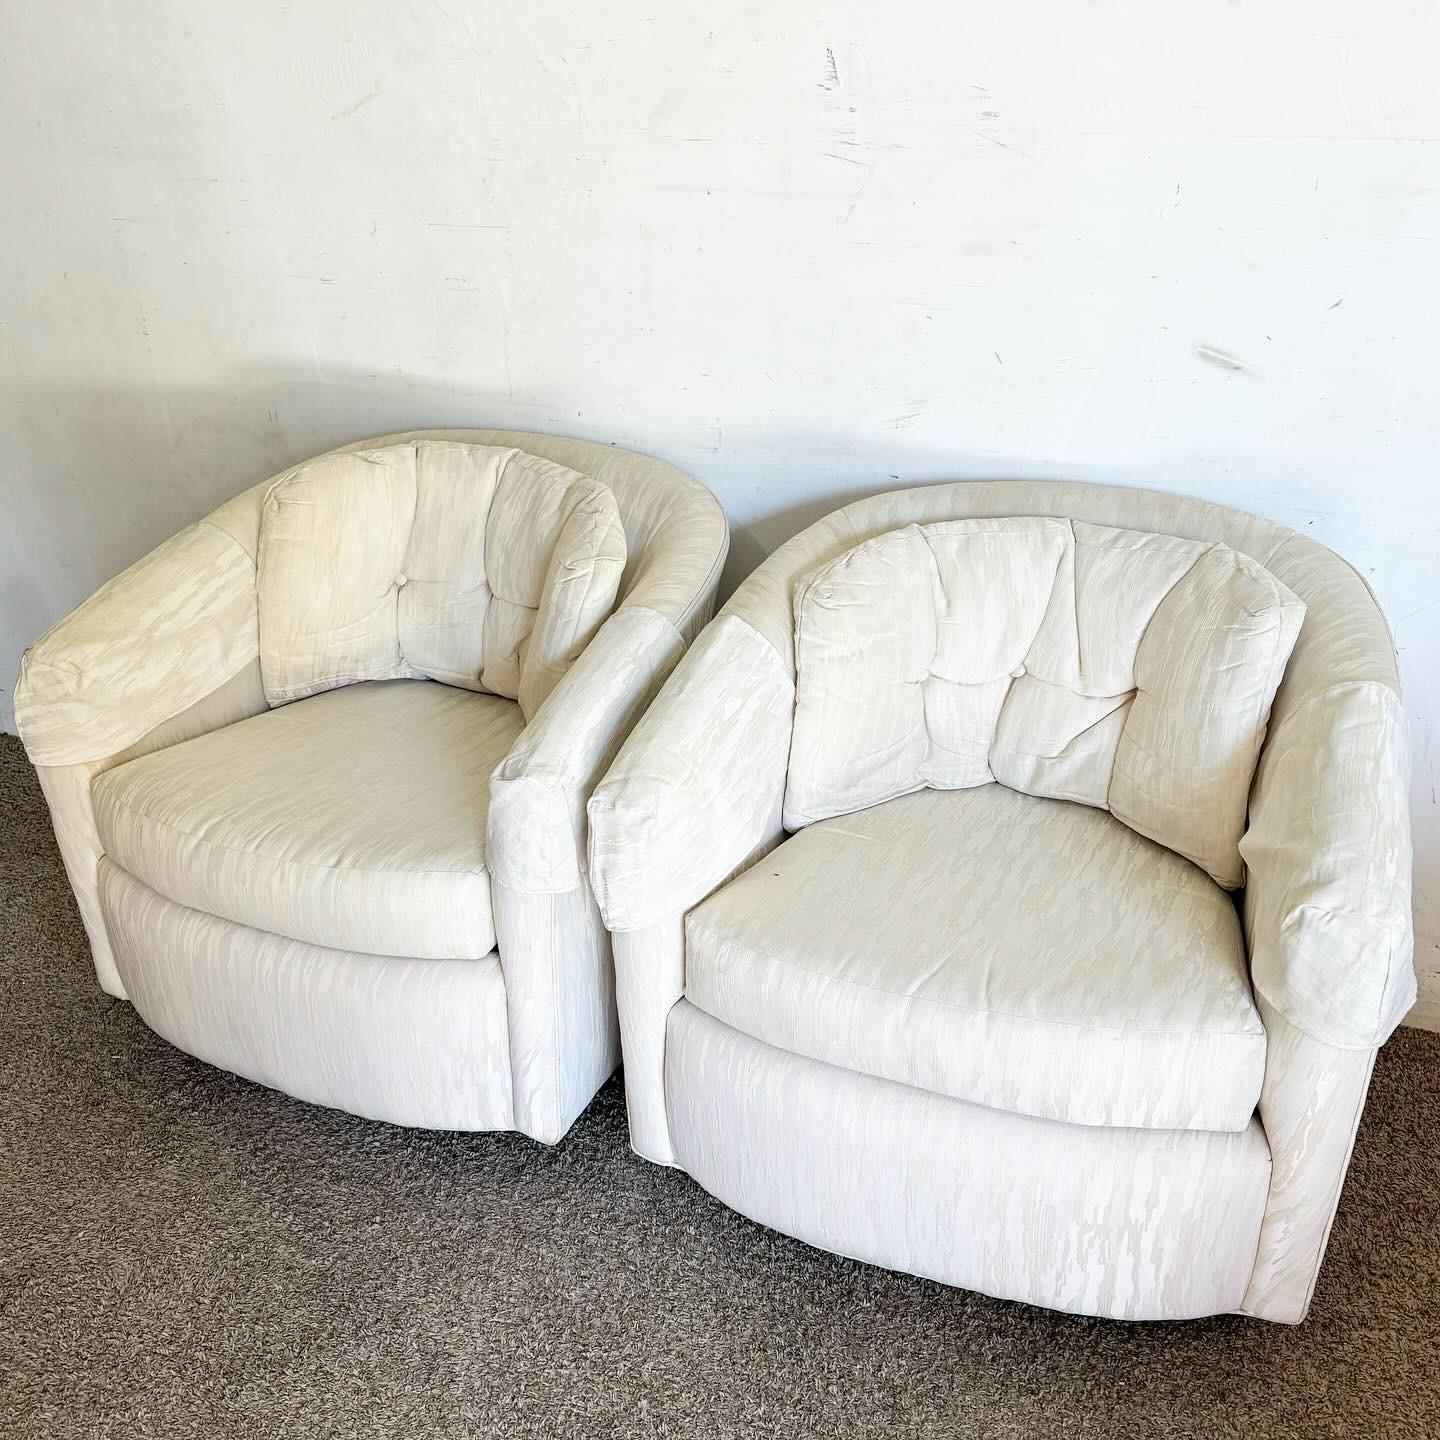 Ein Paar Postmodern Tufted Barrel Swivel Chairs, bei denen luxuriöse Tuftings auf dynamische Drehfunktionalität treffen. Diese Stühle bieten eine gemütliche, stilvolle Sitzgelegenheit, perfekt für jeden modernen Raum, der eine Mischung aus Komfort